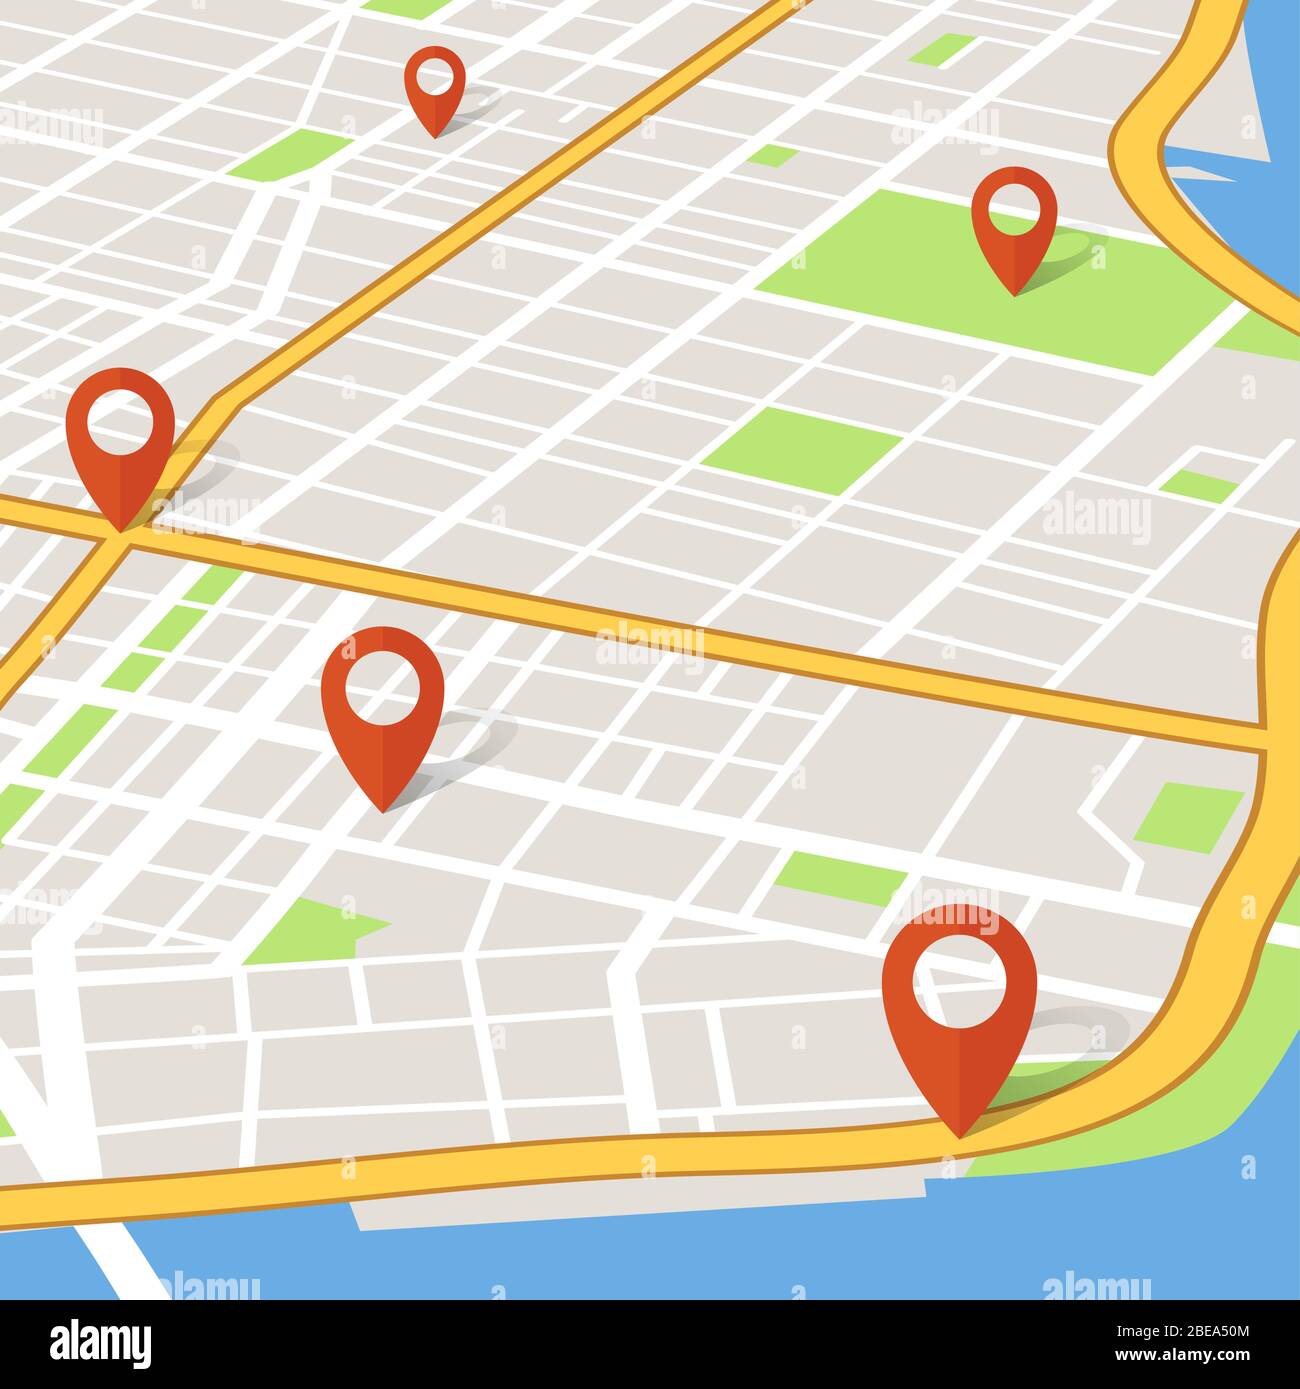 Carte de ville en 3 dimensions avec pointeurs de broches. Concept de vecteur de navigation gps Abstarct. Illustration du GPS du navigateur de cartes, route de navigation urbaine Illustration de Vecteur